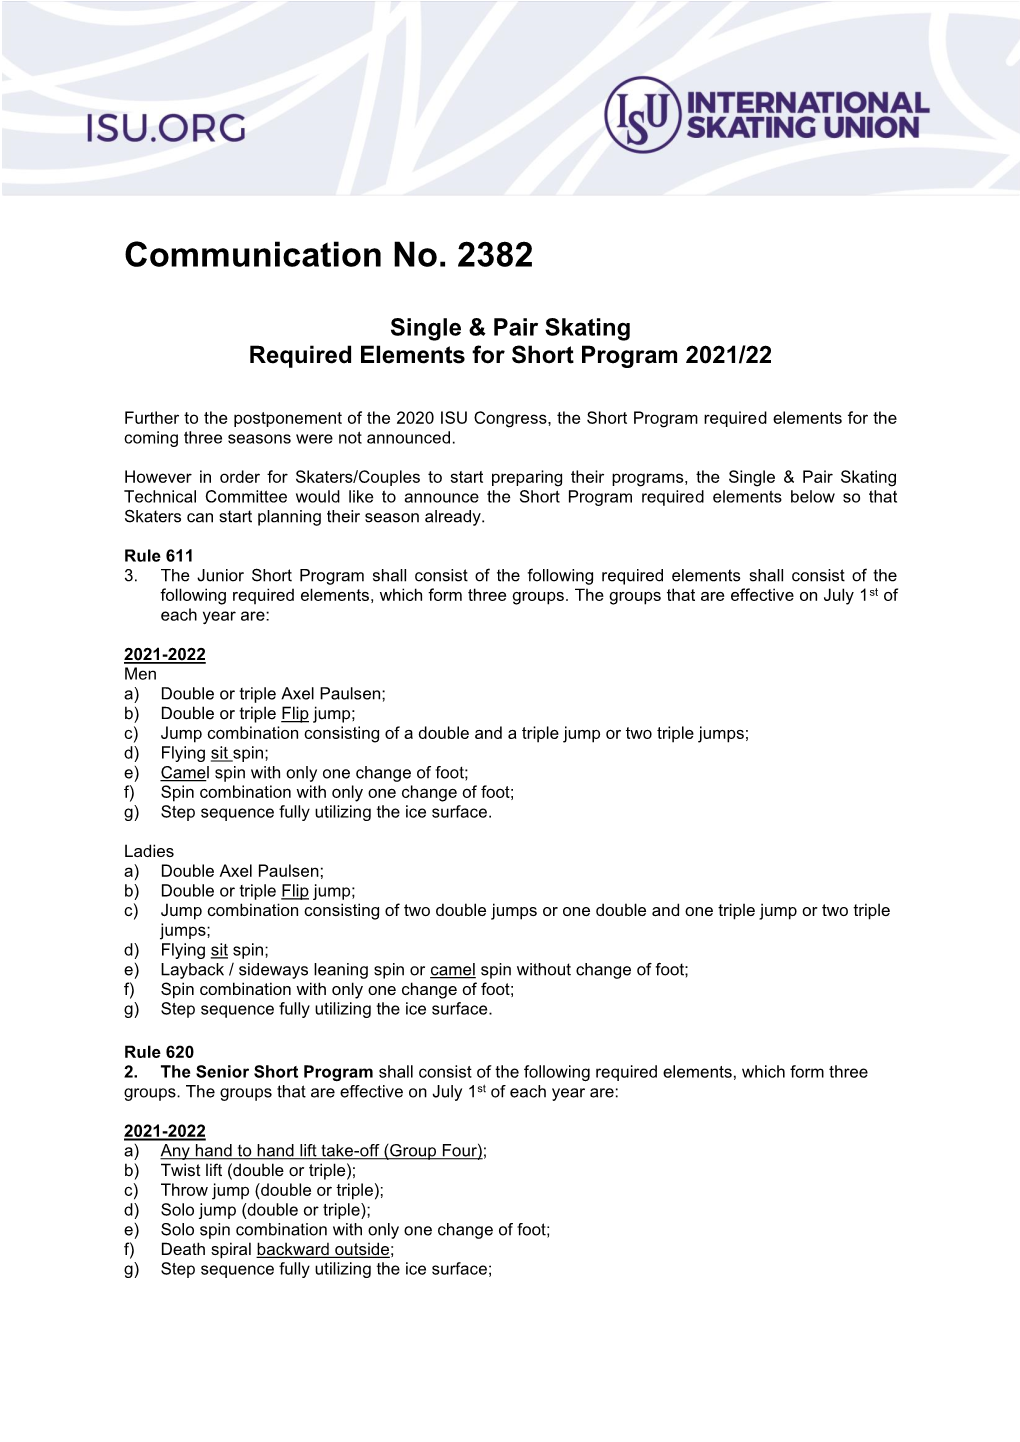 ISU Communication 2382